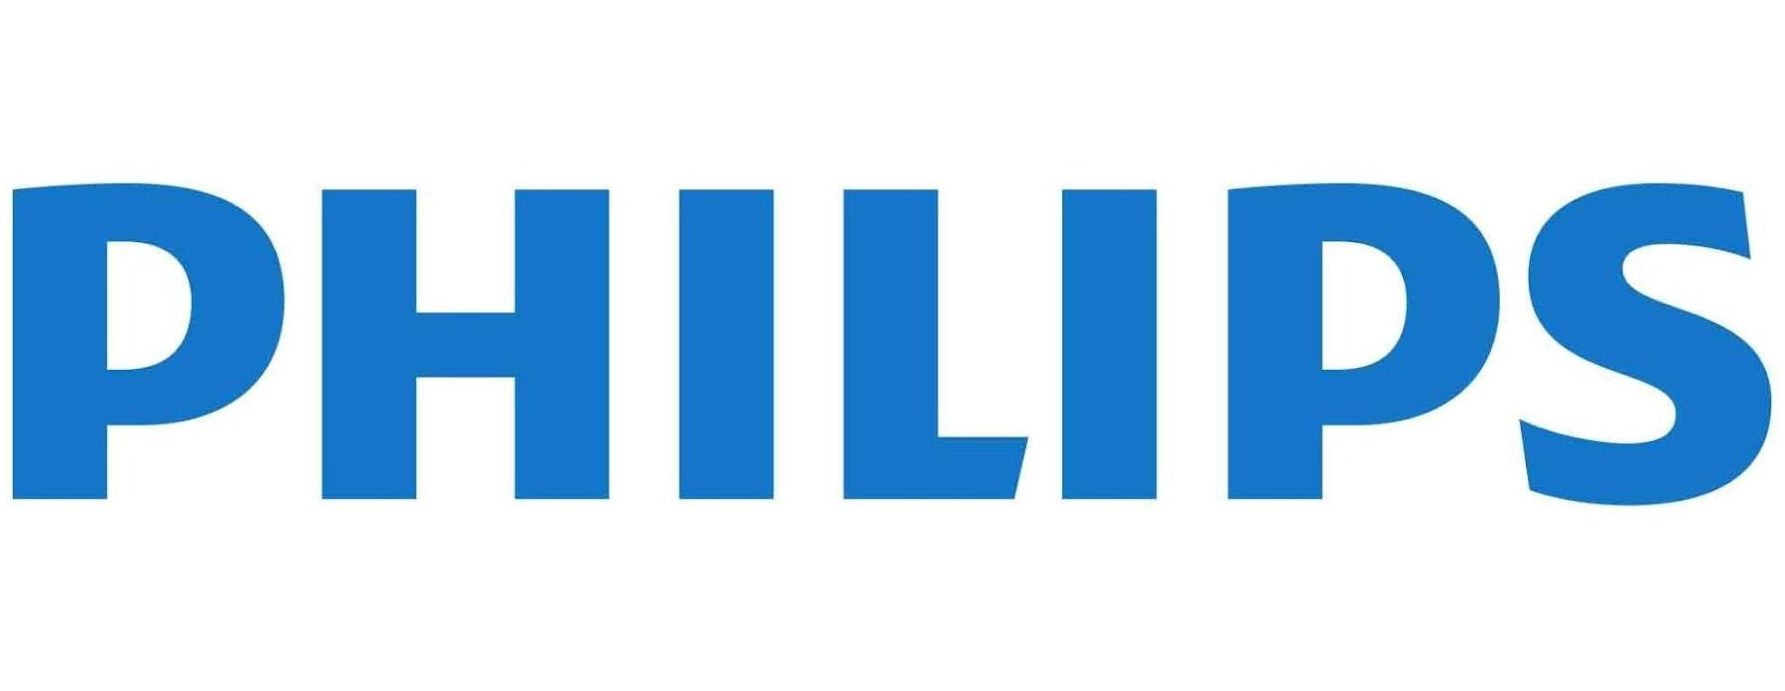 logotipo de philips